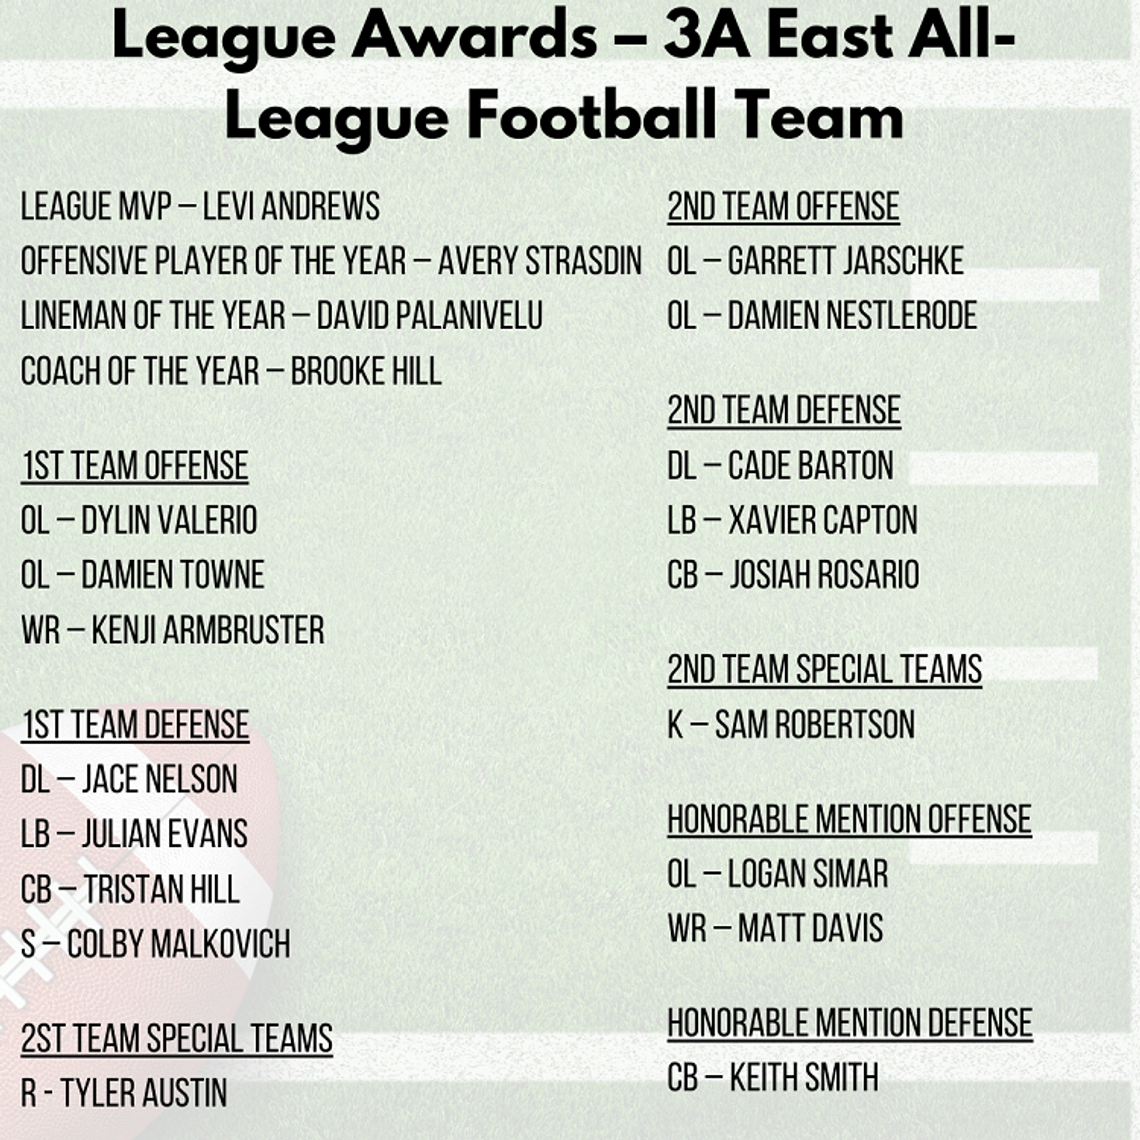 League Awards -- 3A East All League Football Team